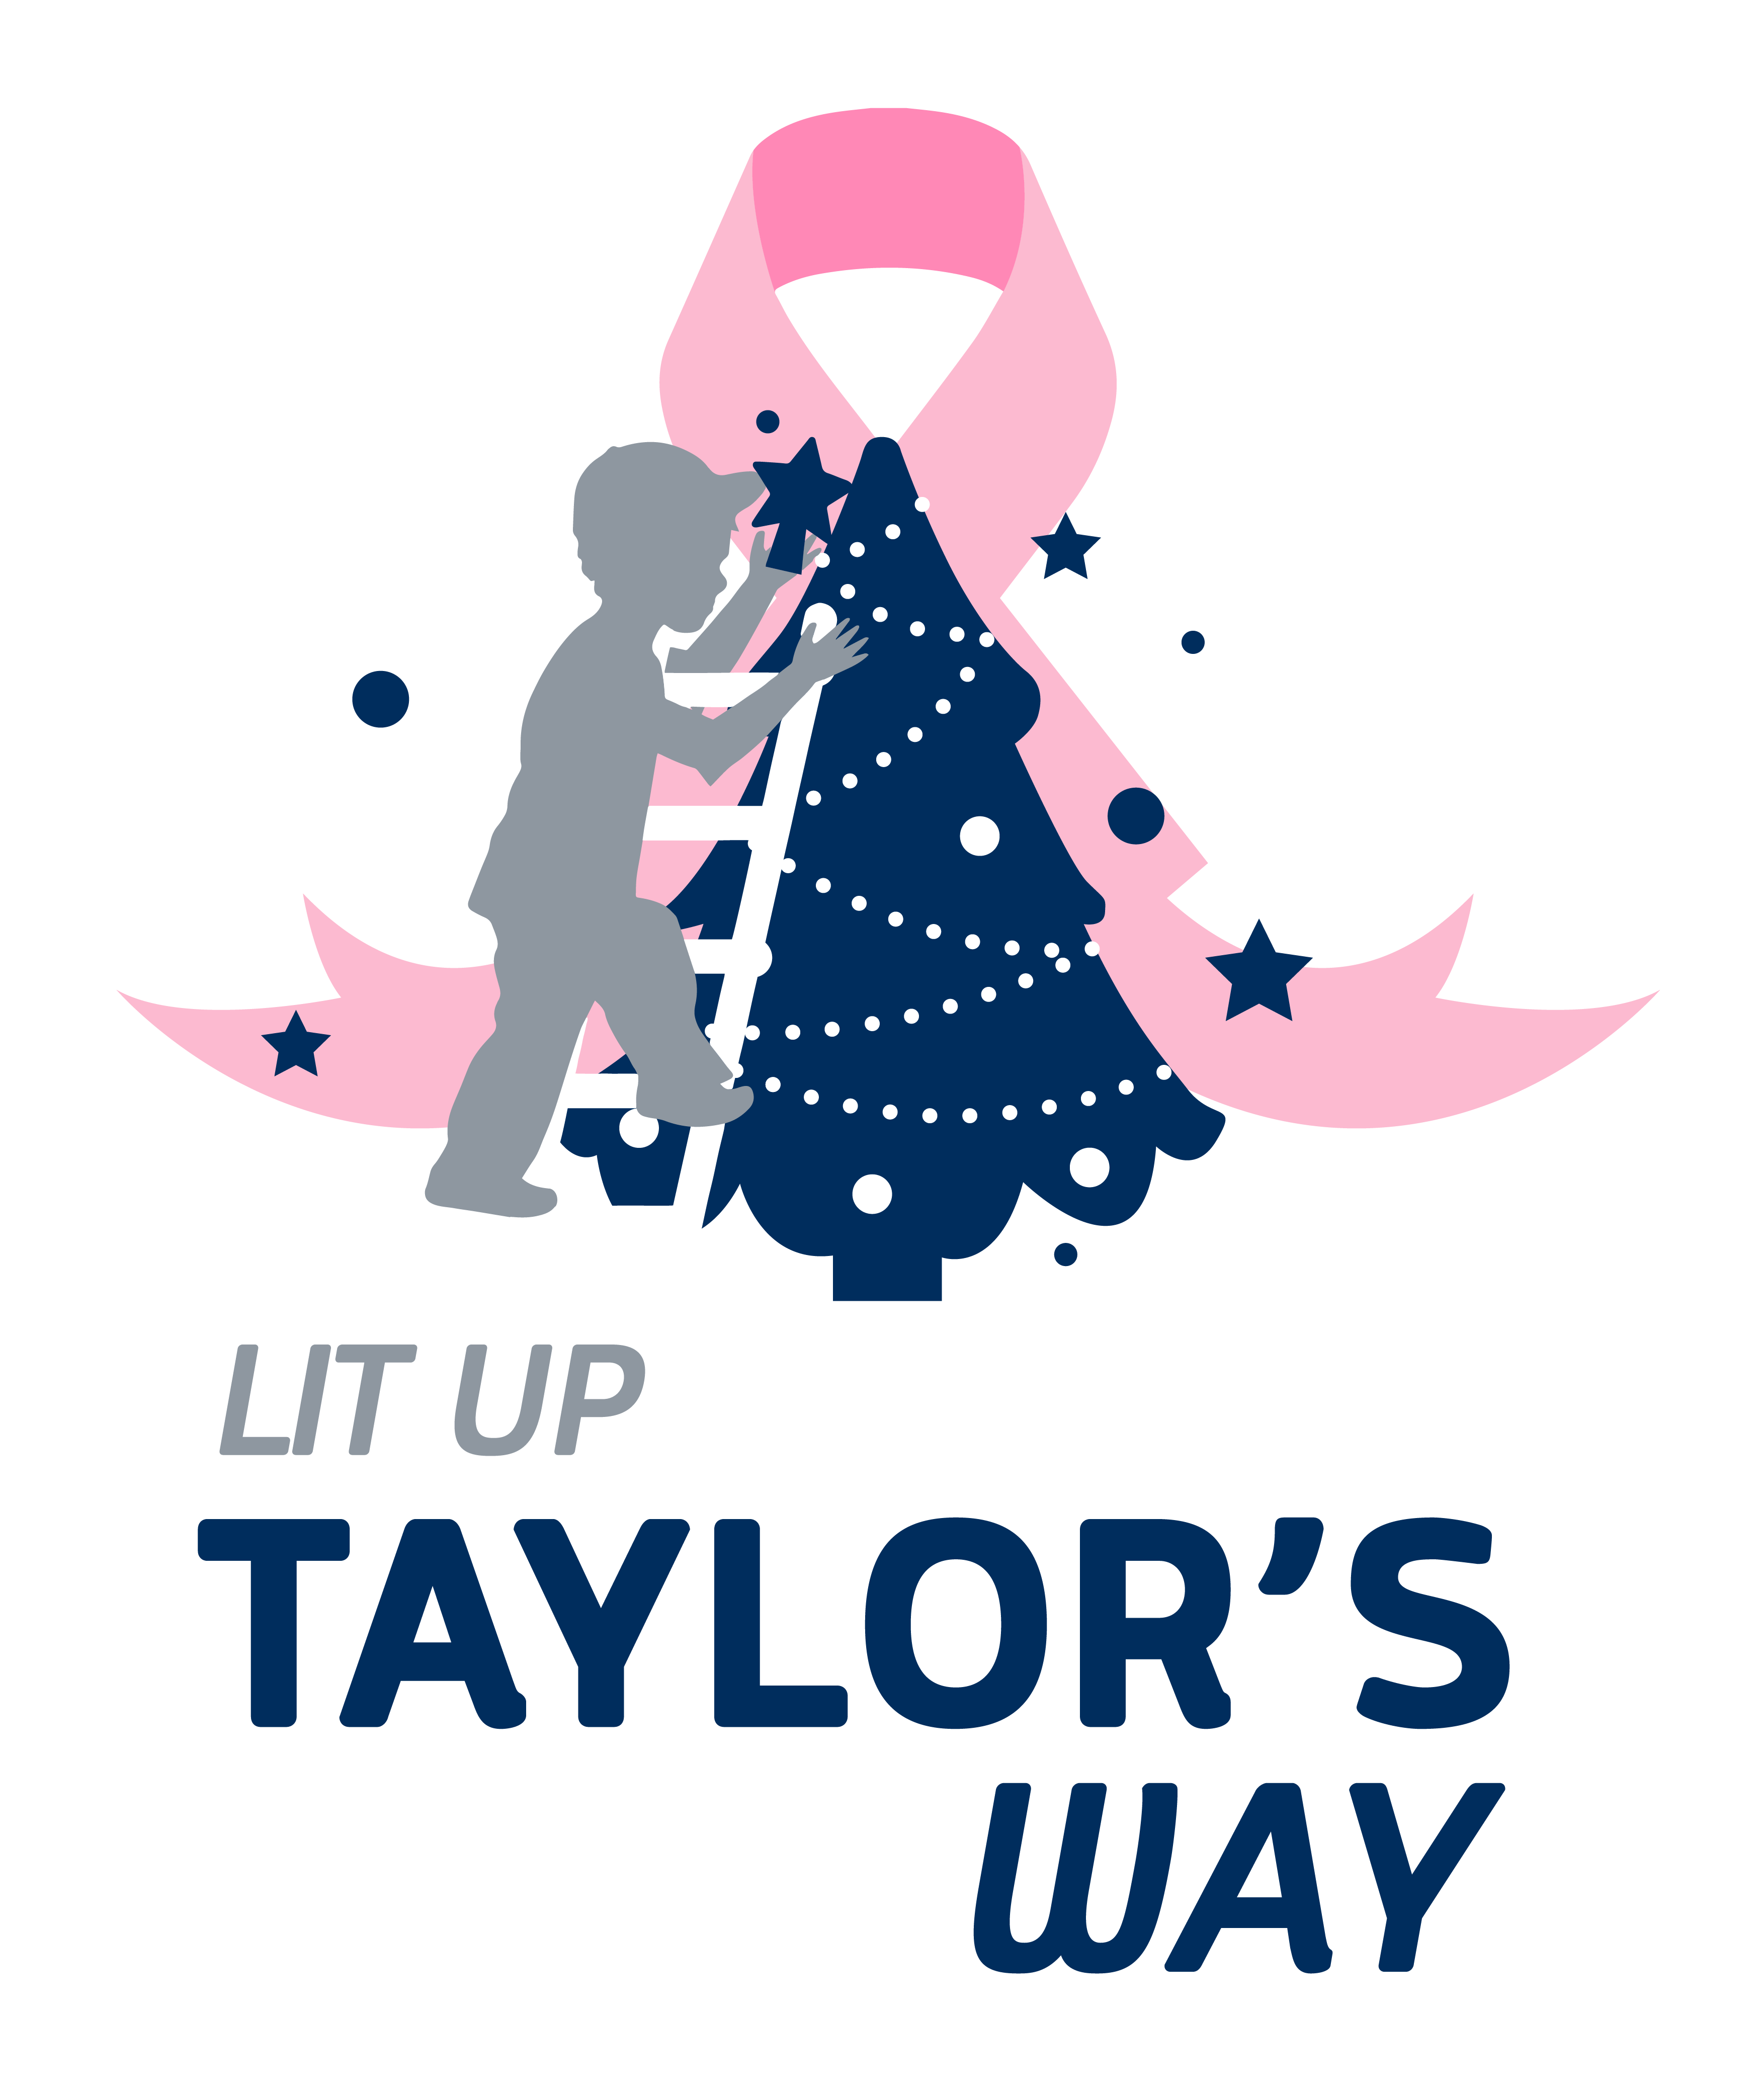 Taylors way with pink ribbon-01 (1)